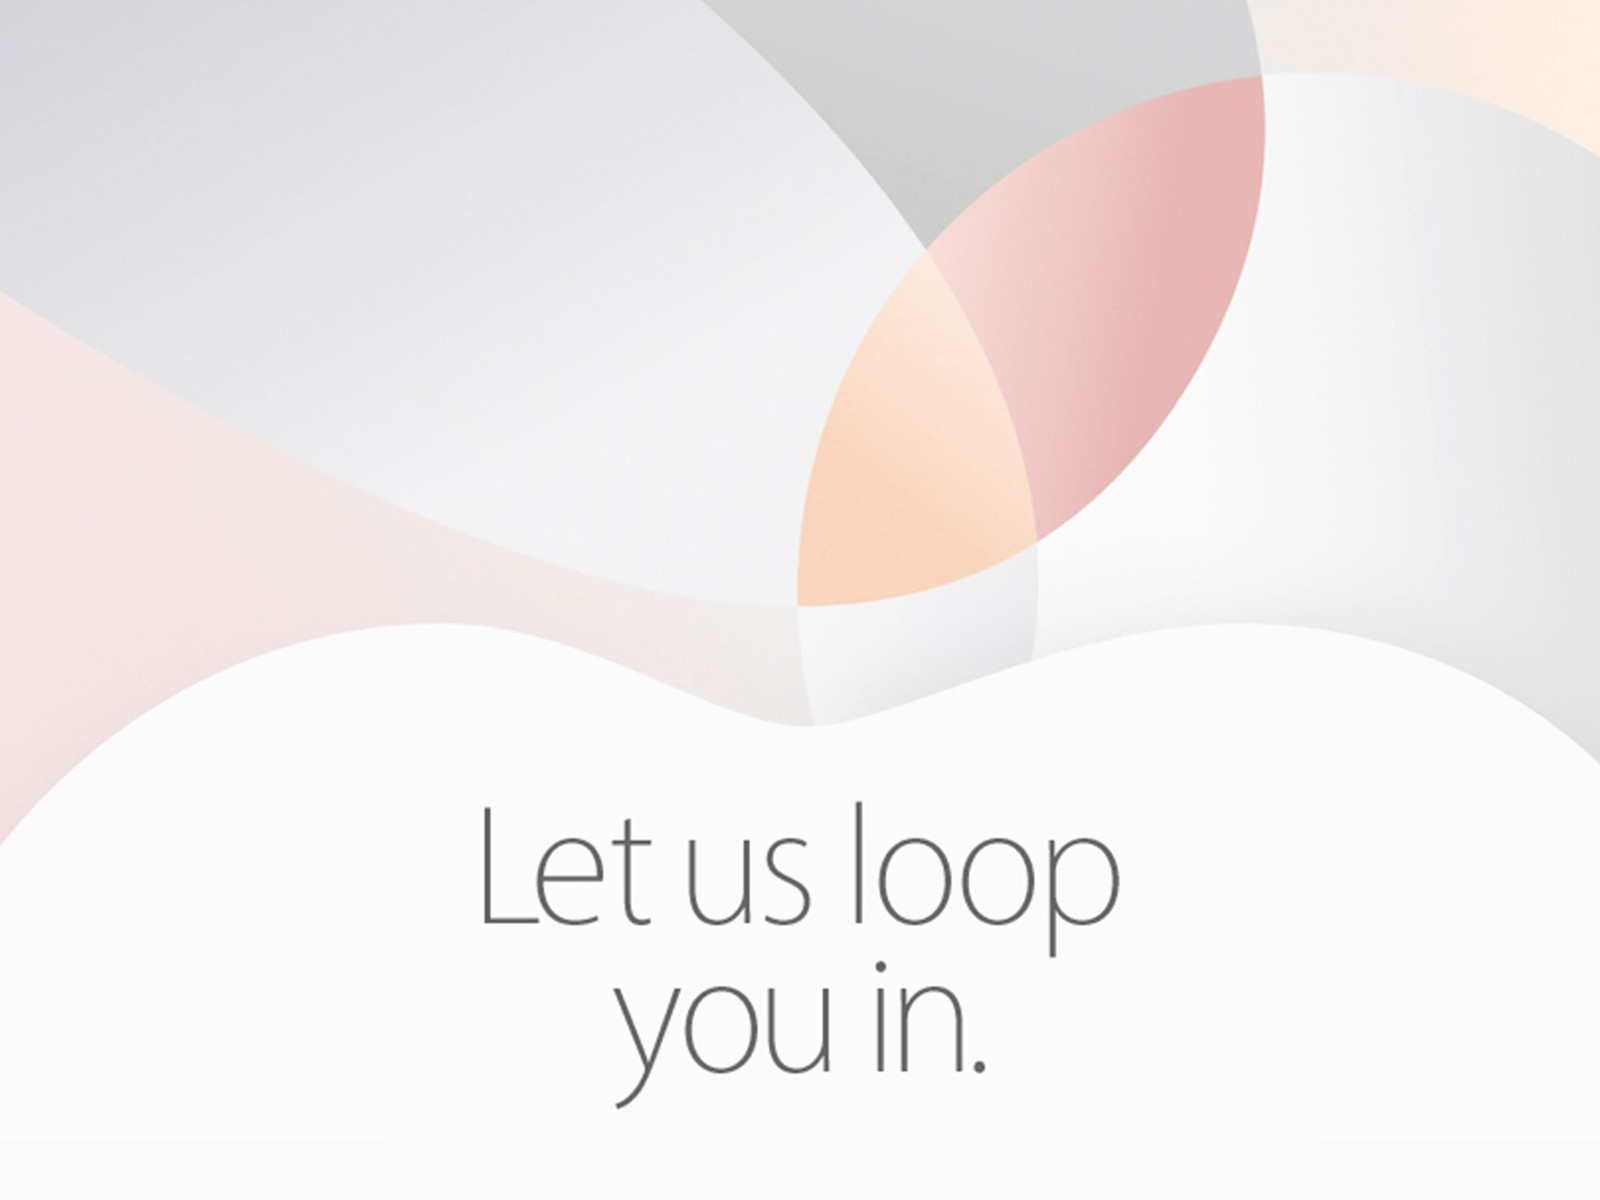 Ufficiale: evento Apple fissato il 21 marzo, iPhone SE e iPad Pro da 9.7 pollici in arrivo!